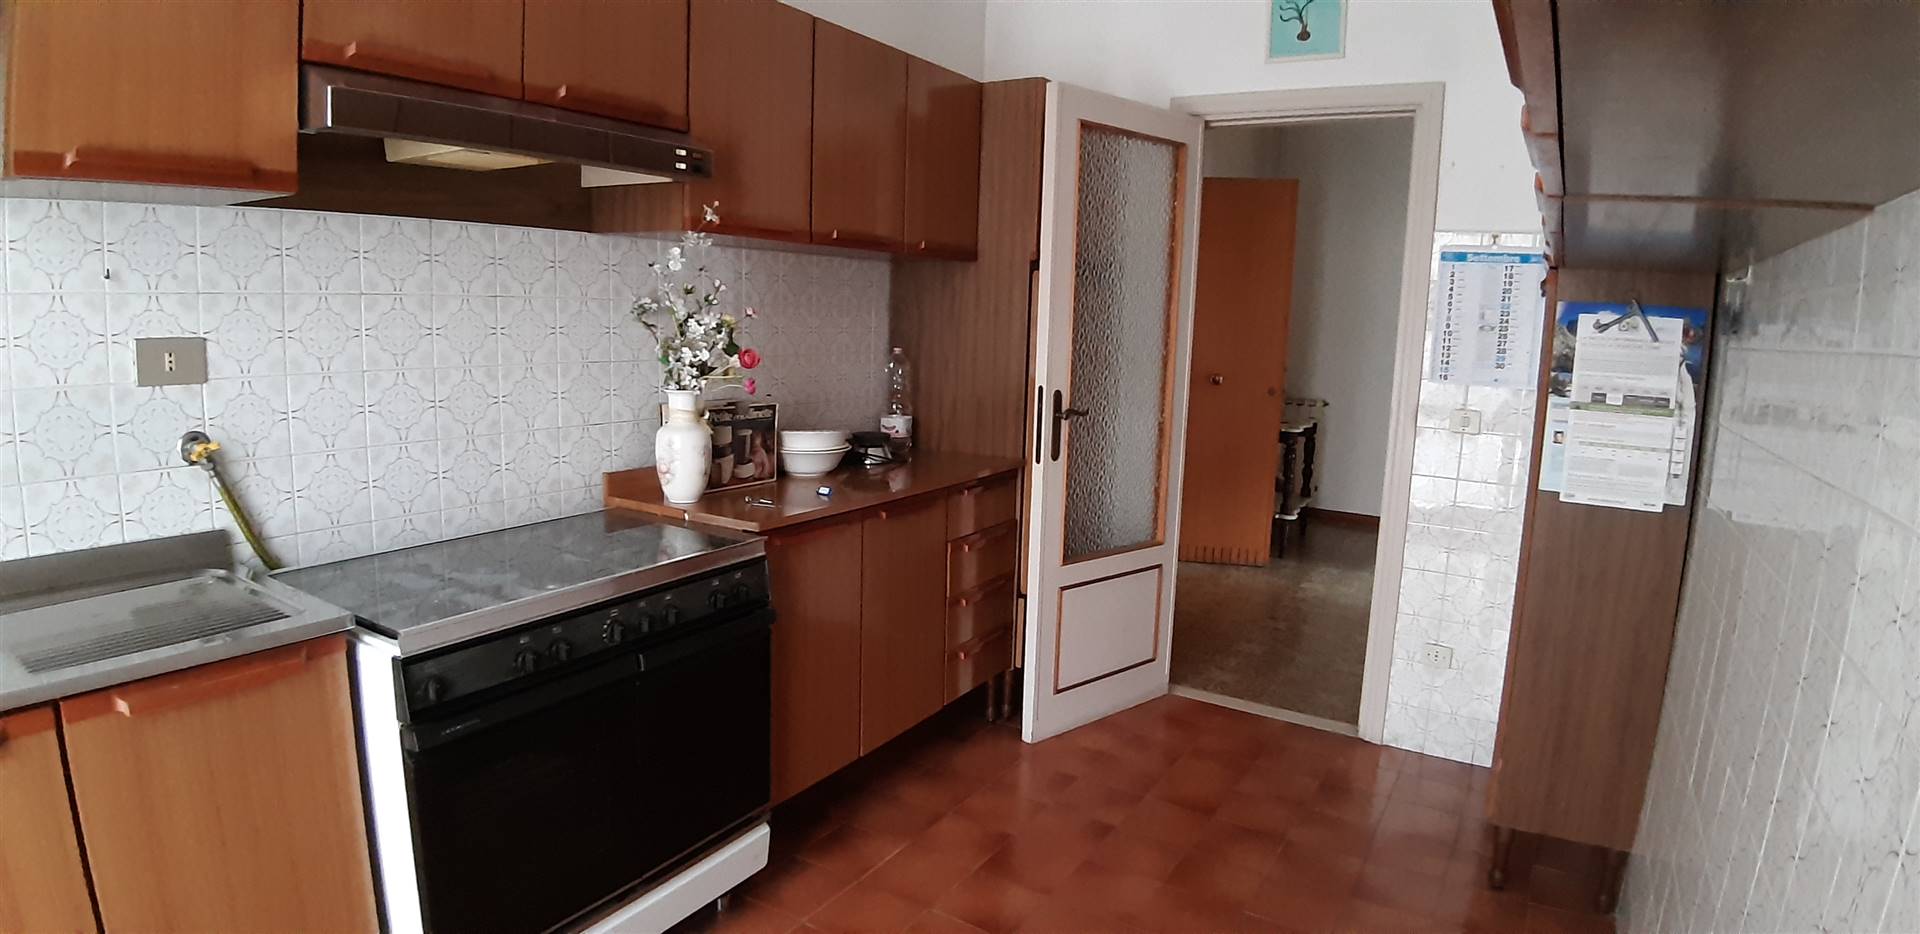 Appartamento in vendita a Chianciano Terme, 6 locali, prezzo € 80.000 | PortaleAgenzieImmobiliari.it